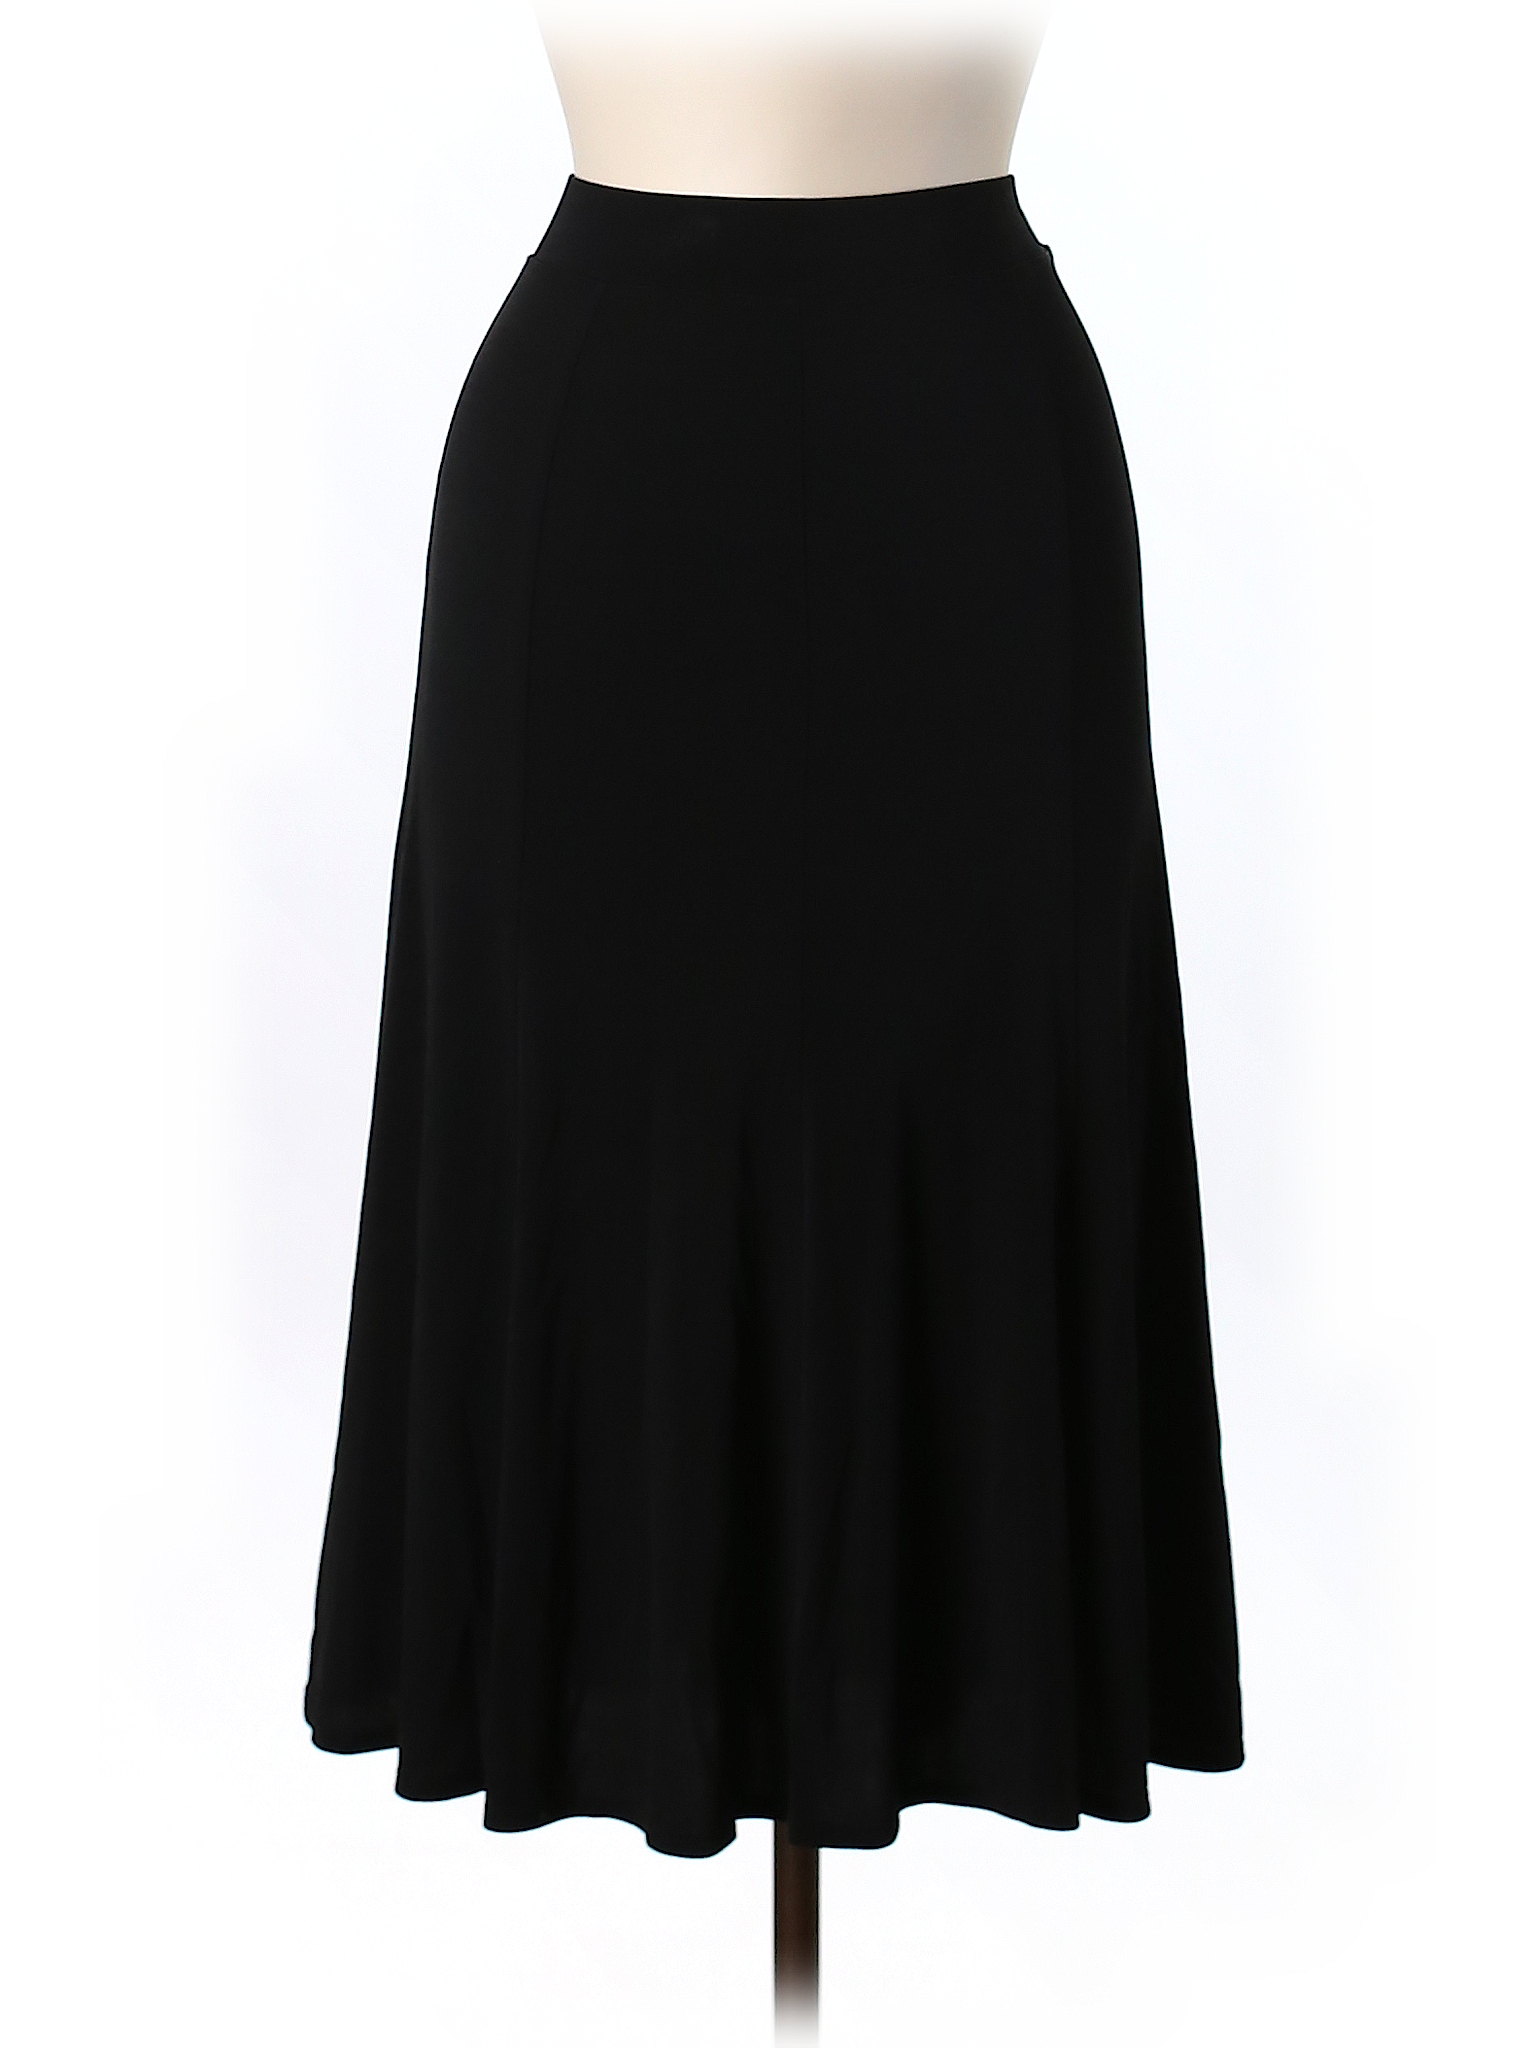 Eileen Fisher 100% Silk Solid Black Silk Skirt Size M - 80% off | thredUP